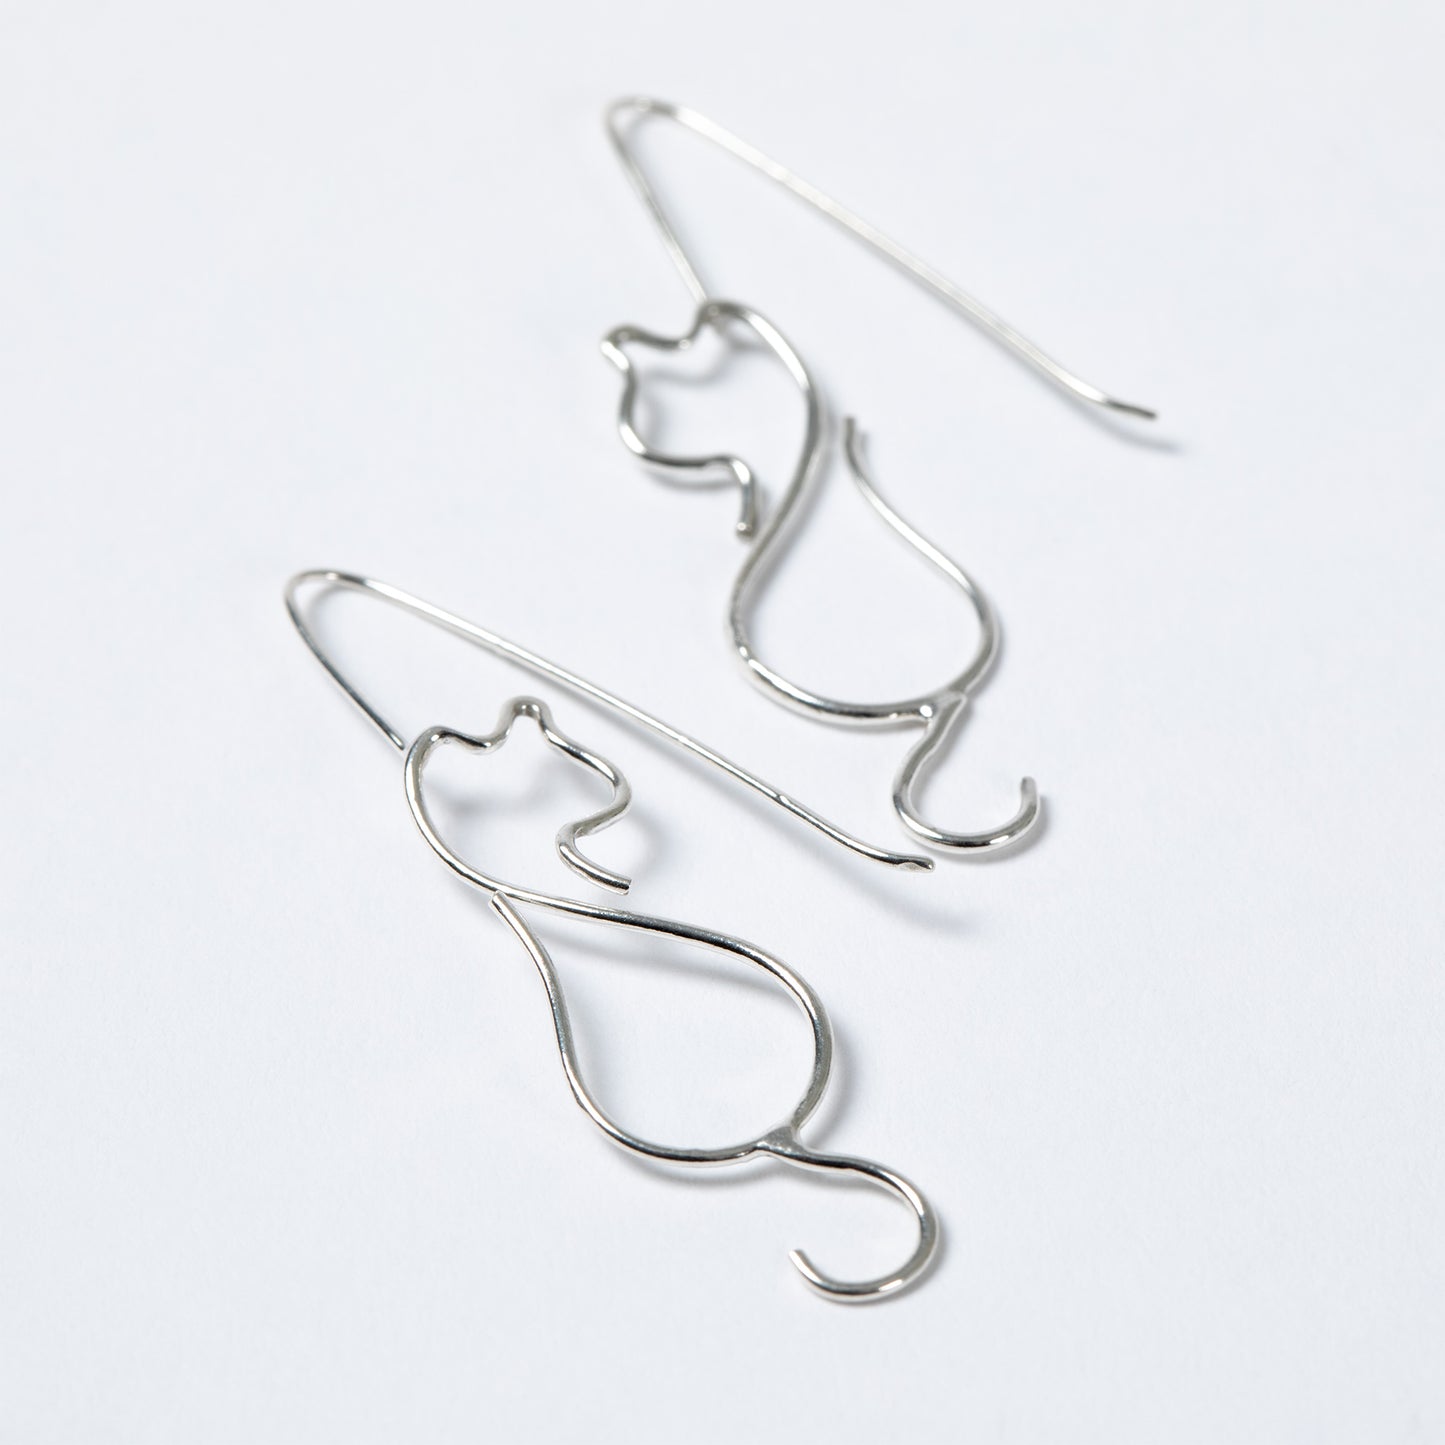 Minimalist Cat Wire Sterling Earrings